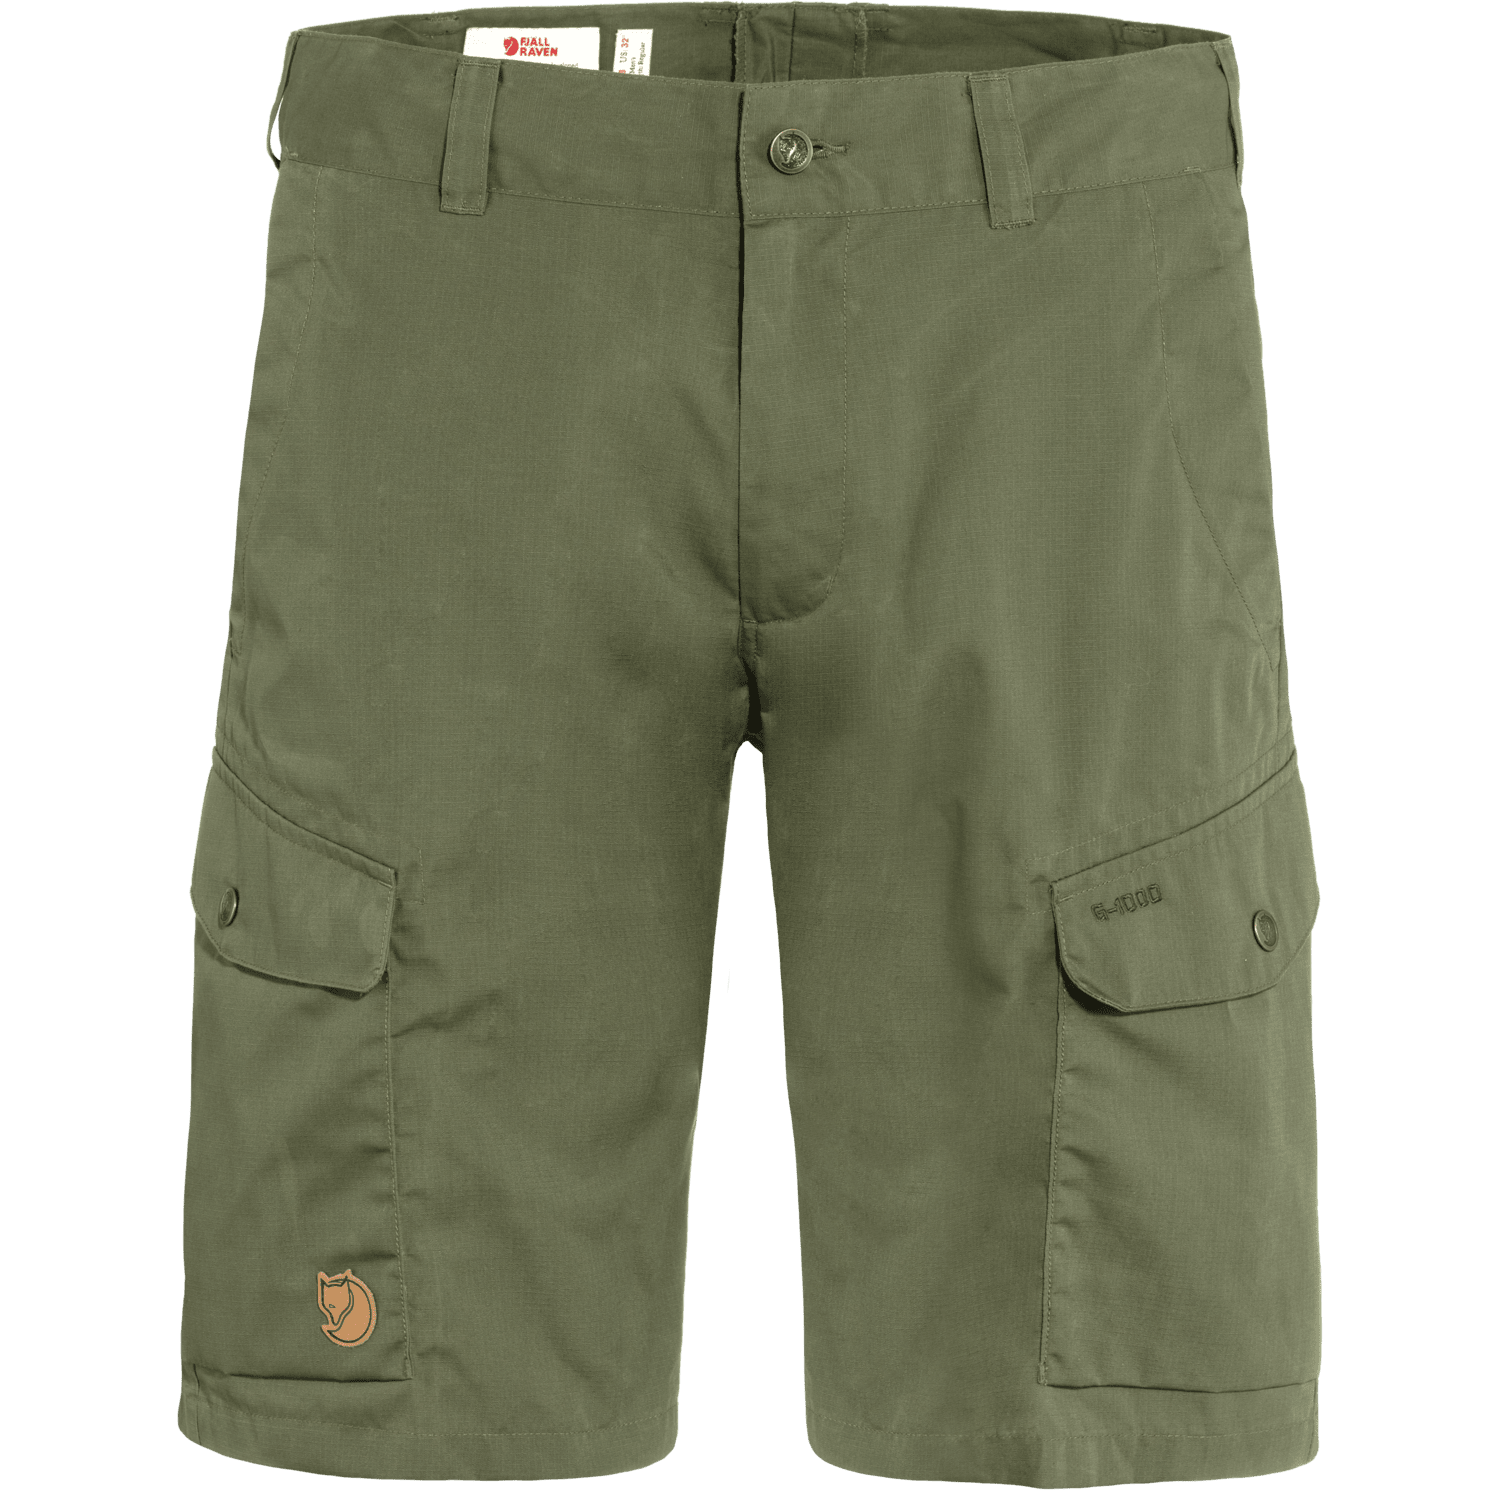 Fjällräven - M's Ruaha Shorts - G-1000® Lite - Weekendbee - sustainable sportswear